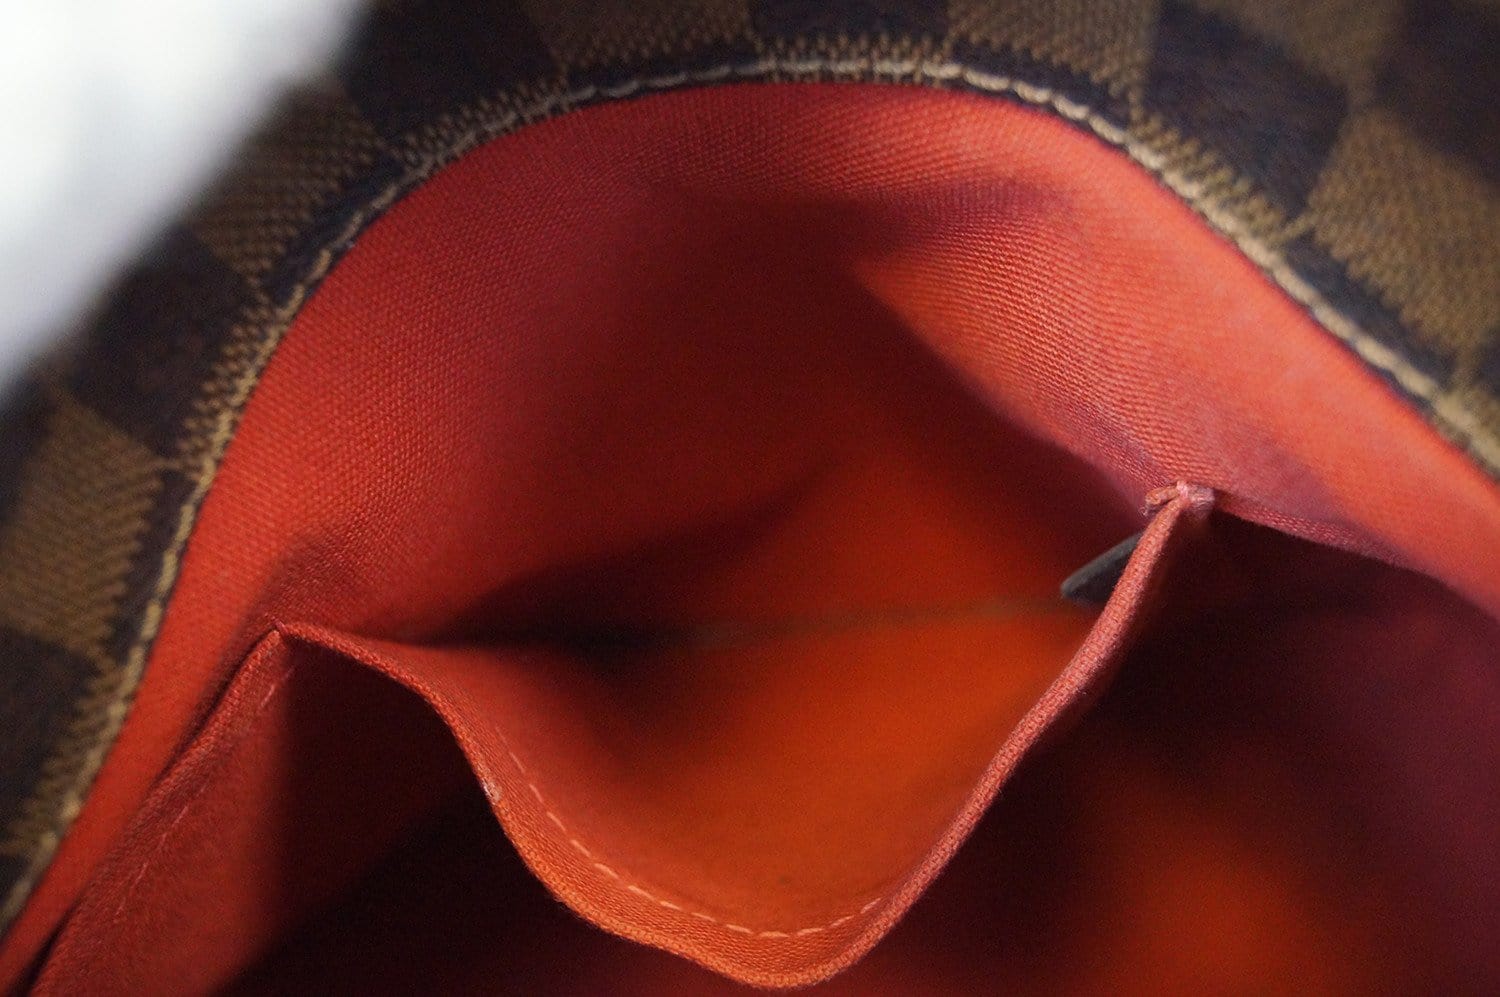 Louis Vuitton Damier Ebene Canvas Cabas Rosebery (Authentic Pre-Owned) -  ShopStyle Shoulder Bags